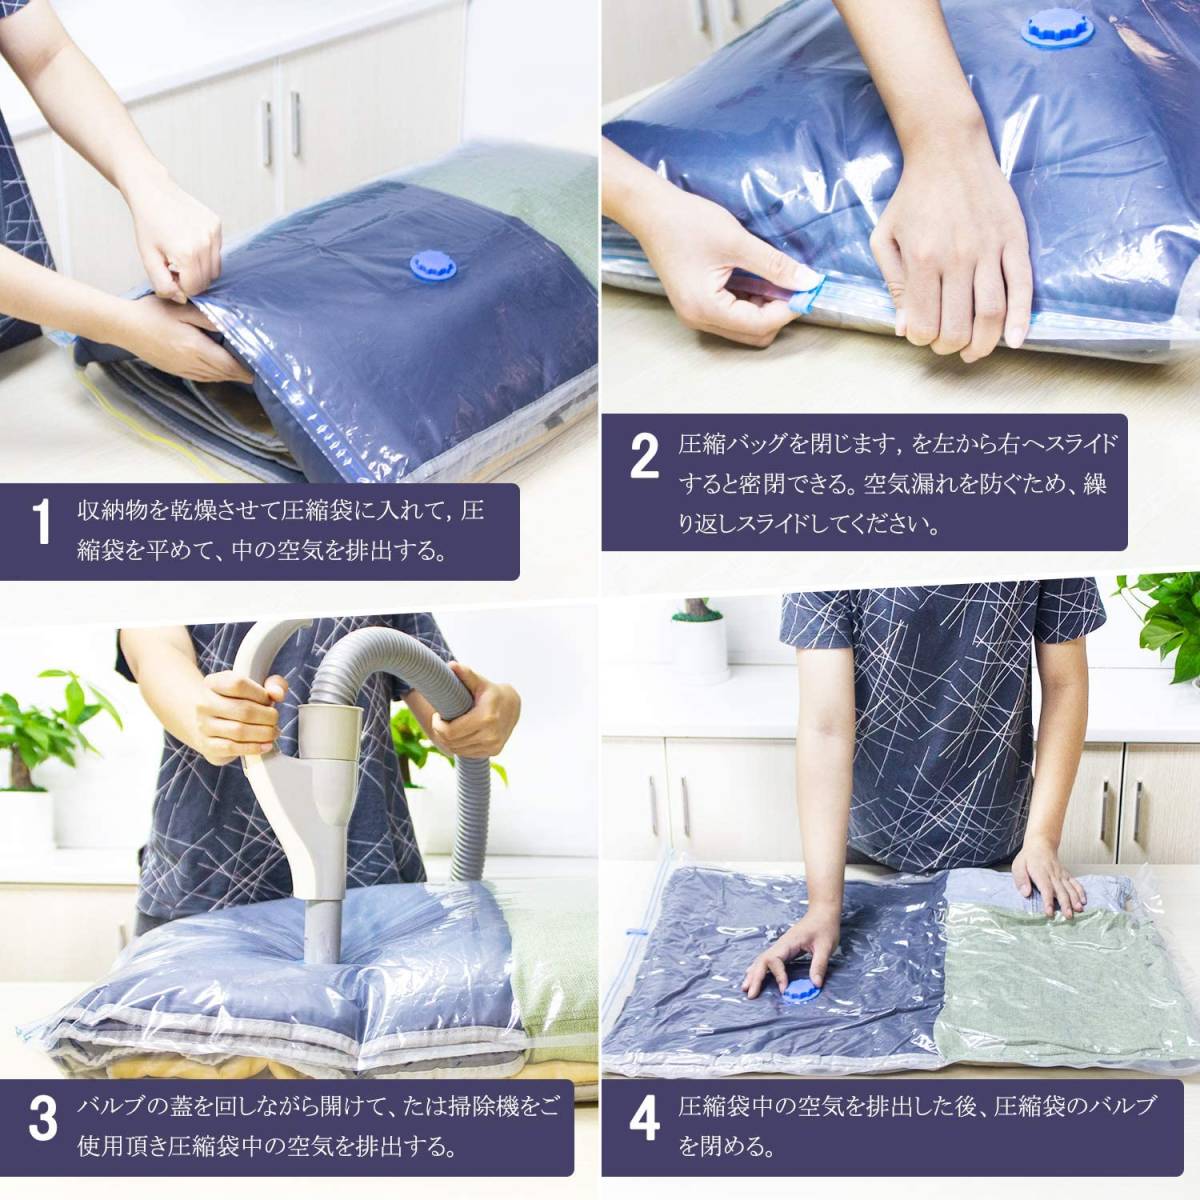  вакуумный мешок futon вакуумный пакет для постели 10 шт. комплект ватное одеяло упаковочный пакет пылесос соответствует M